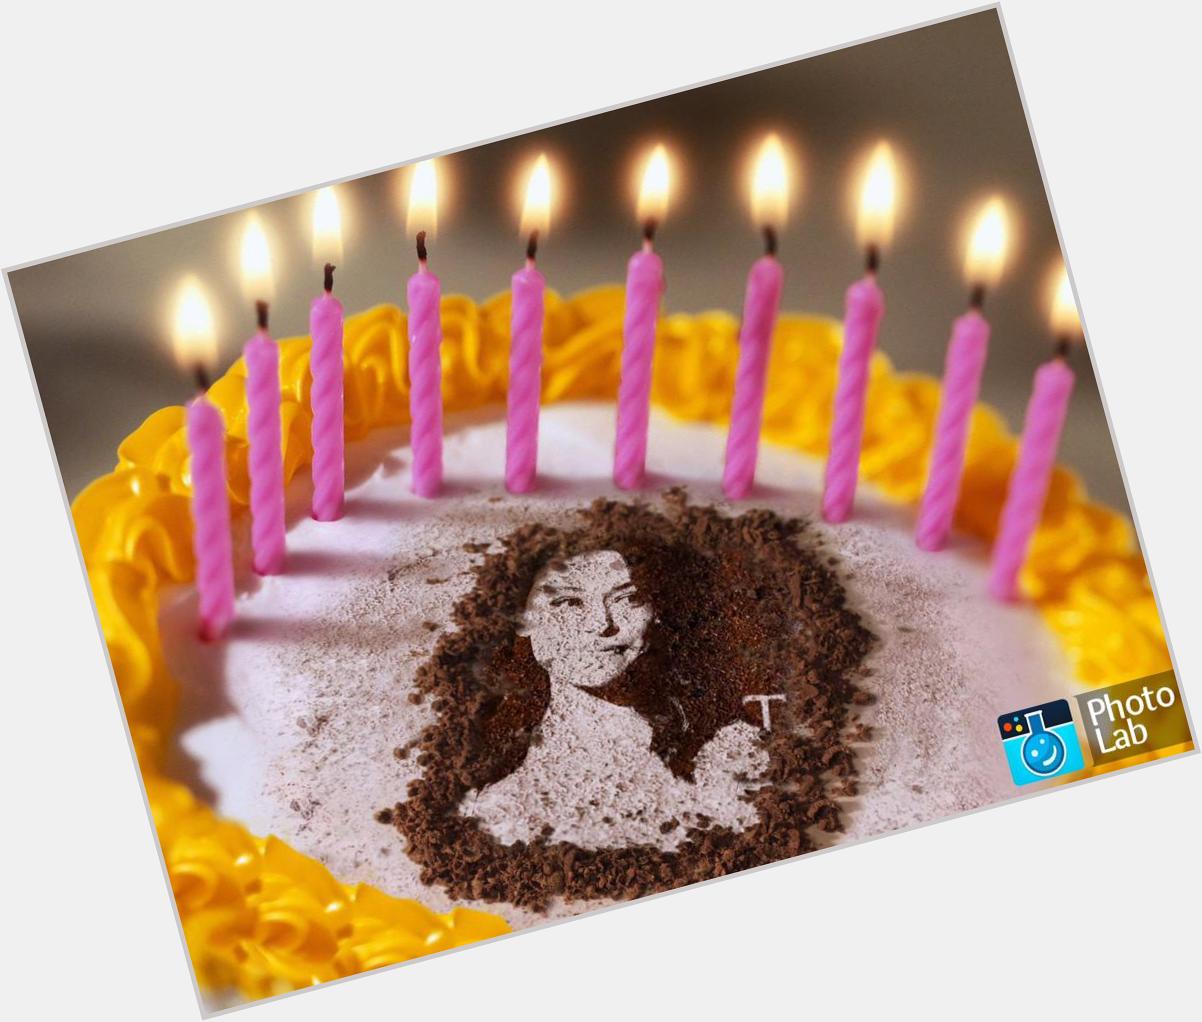 Wishing my beautiful hero Tatiana Maslany a very Happy 30th Birthday!   